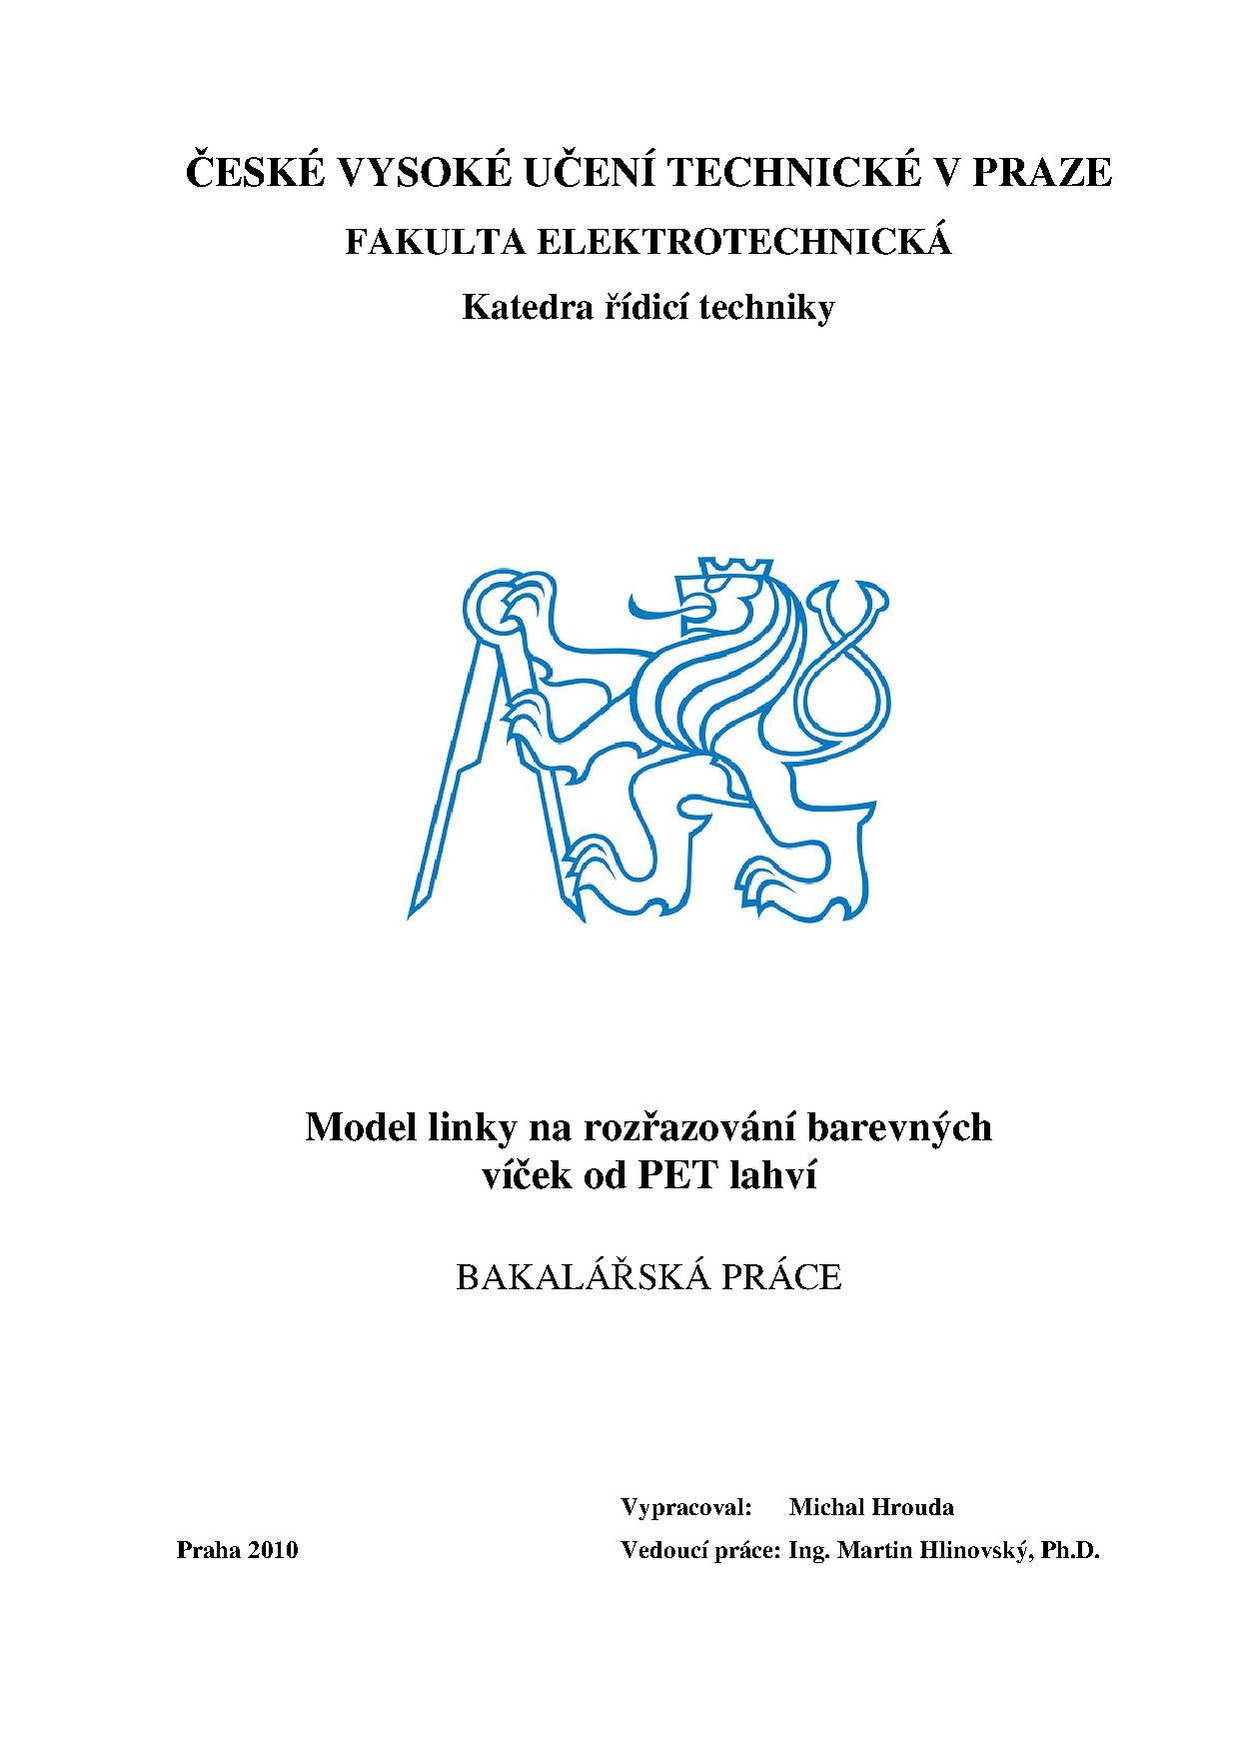 Bp 2010 hrouda michal.pdf